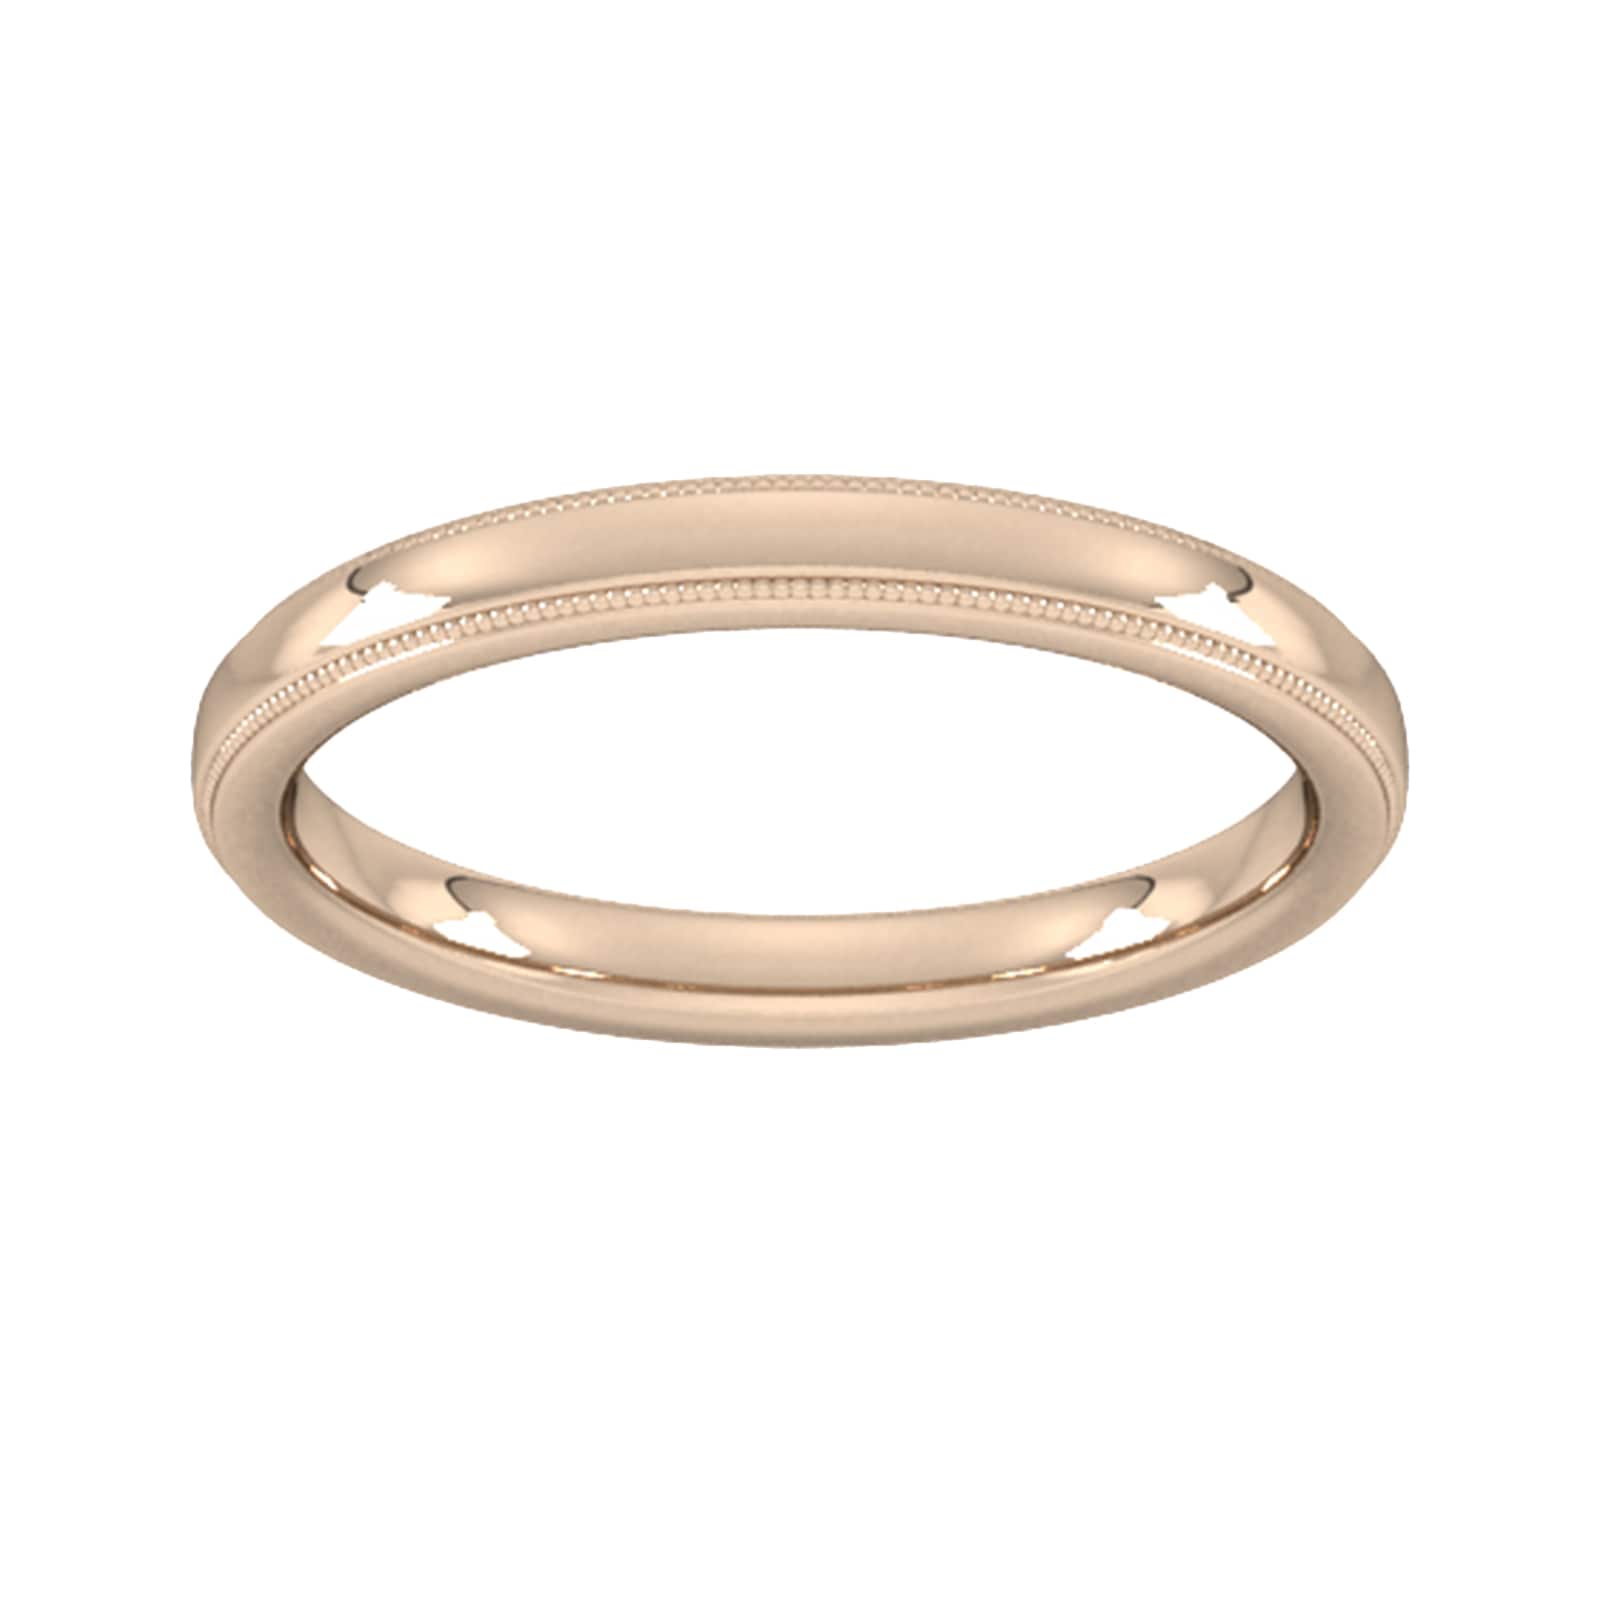 2.5mm slight court heavy milgrain edge wedding ring in 18 carat rose gold - ring size j